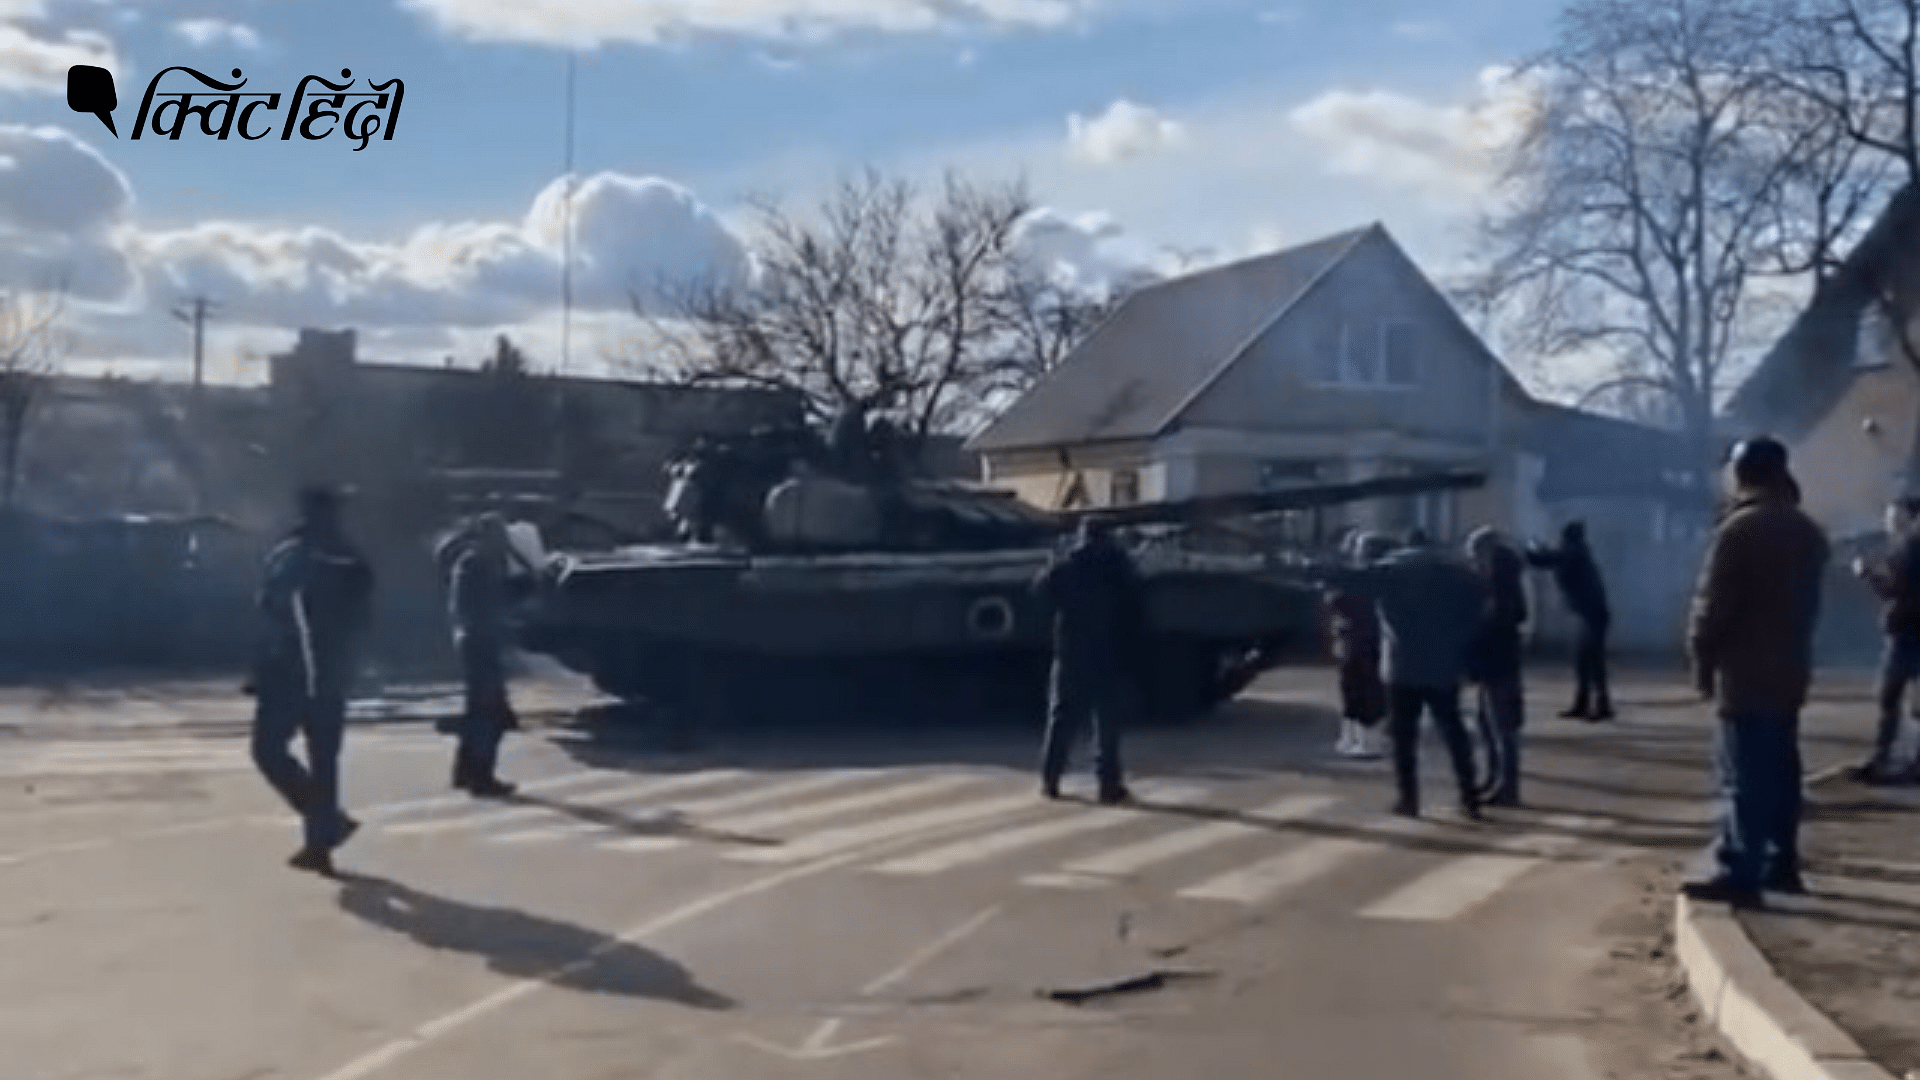 <div class="paragraphs"><p>Russia Ukraine Crisis: रूसी टैंक से मुकाबला करने के लिए सामने खड़े हो गए लोग</p></div>